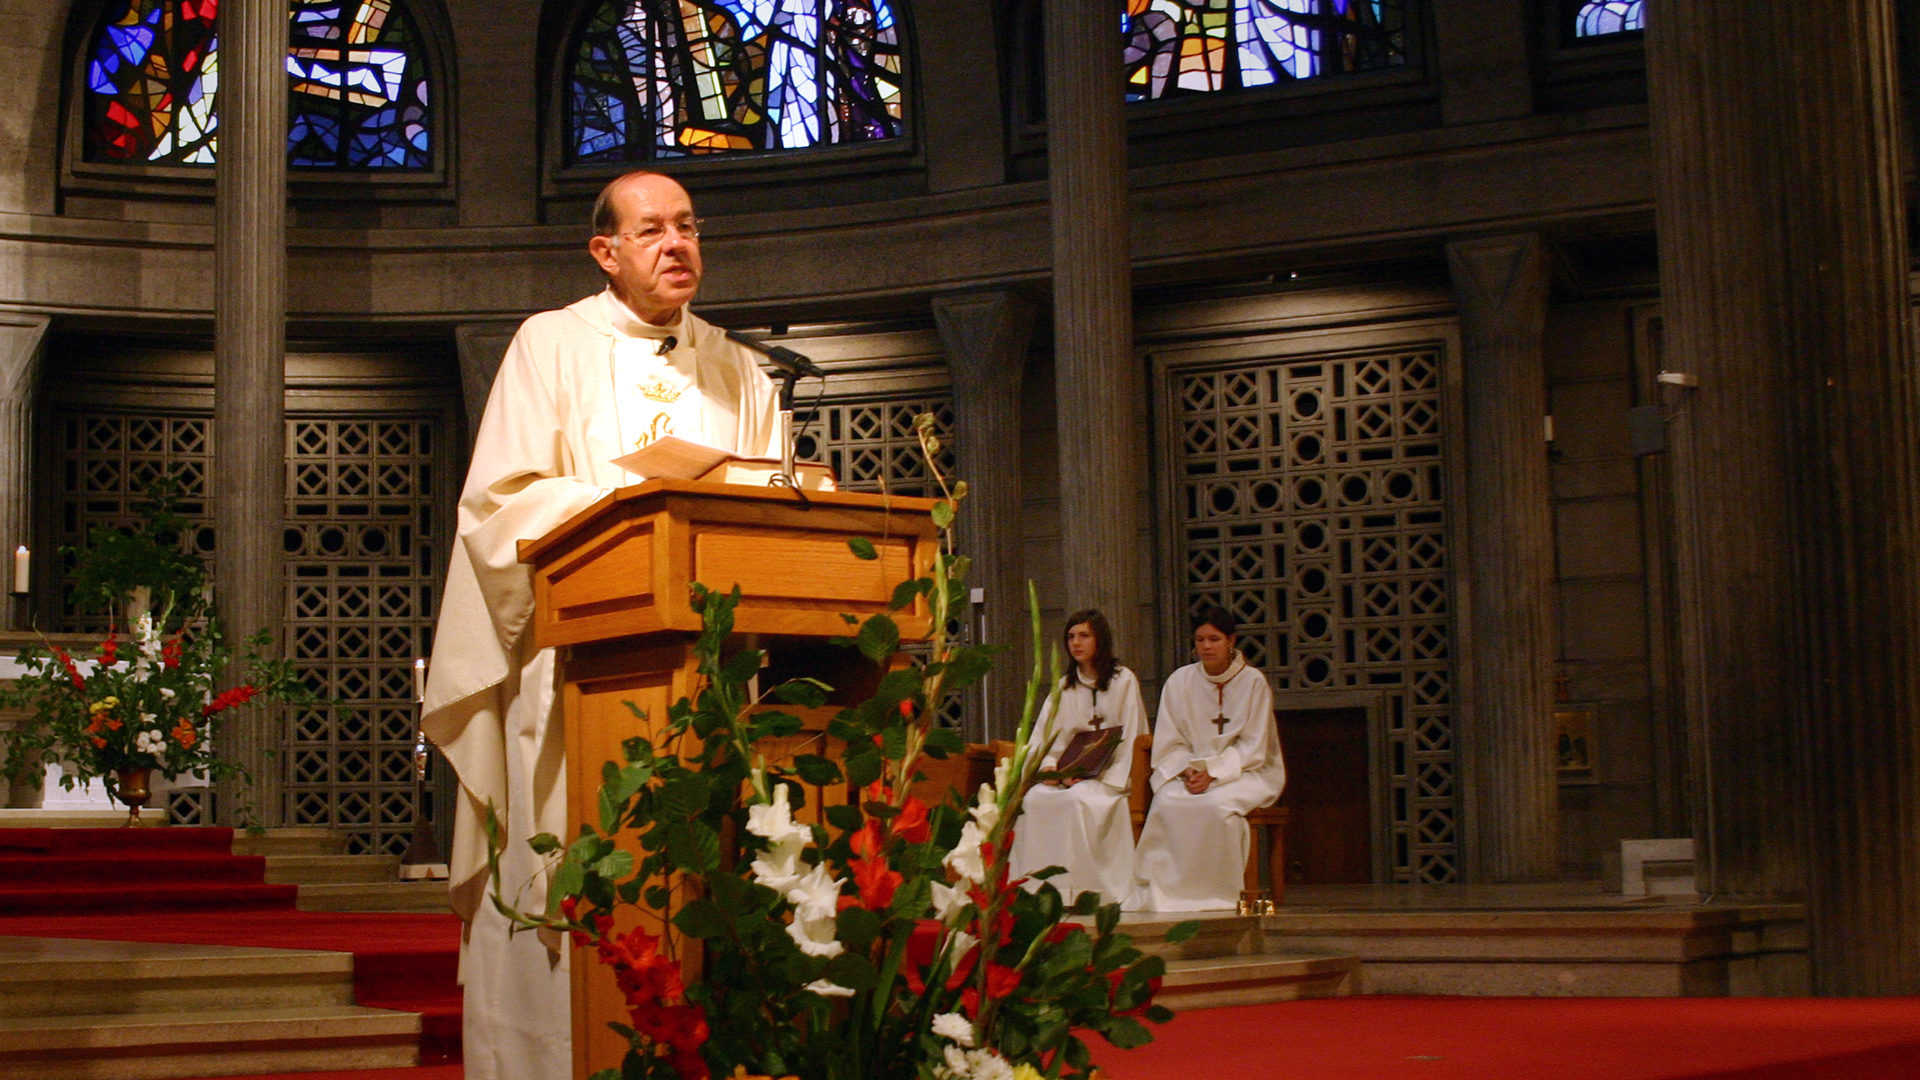 L'abbé Jacques Pillonel accueilli au Christ-Roi, à Fribourg, comme nouveau curé en septembre 2006 | © Valentine Brodard